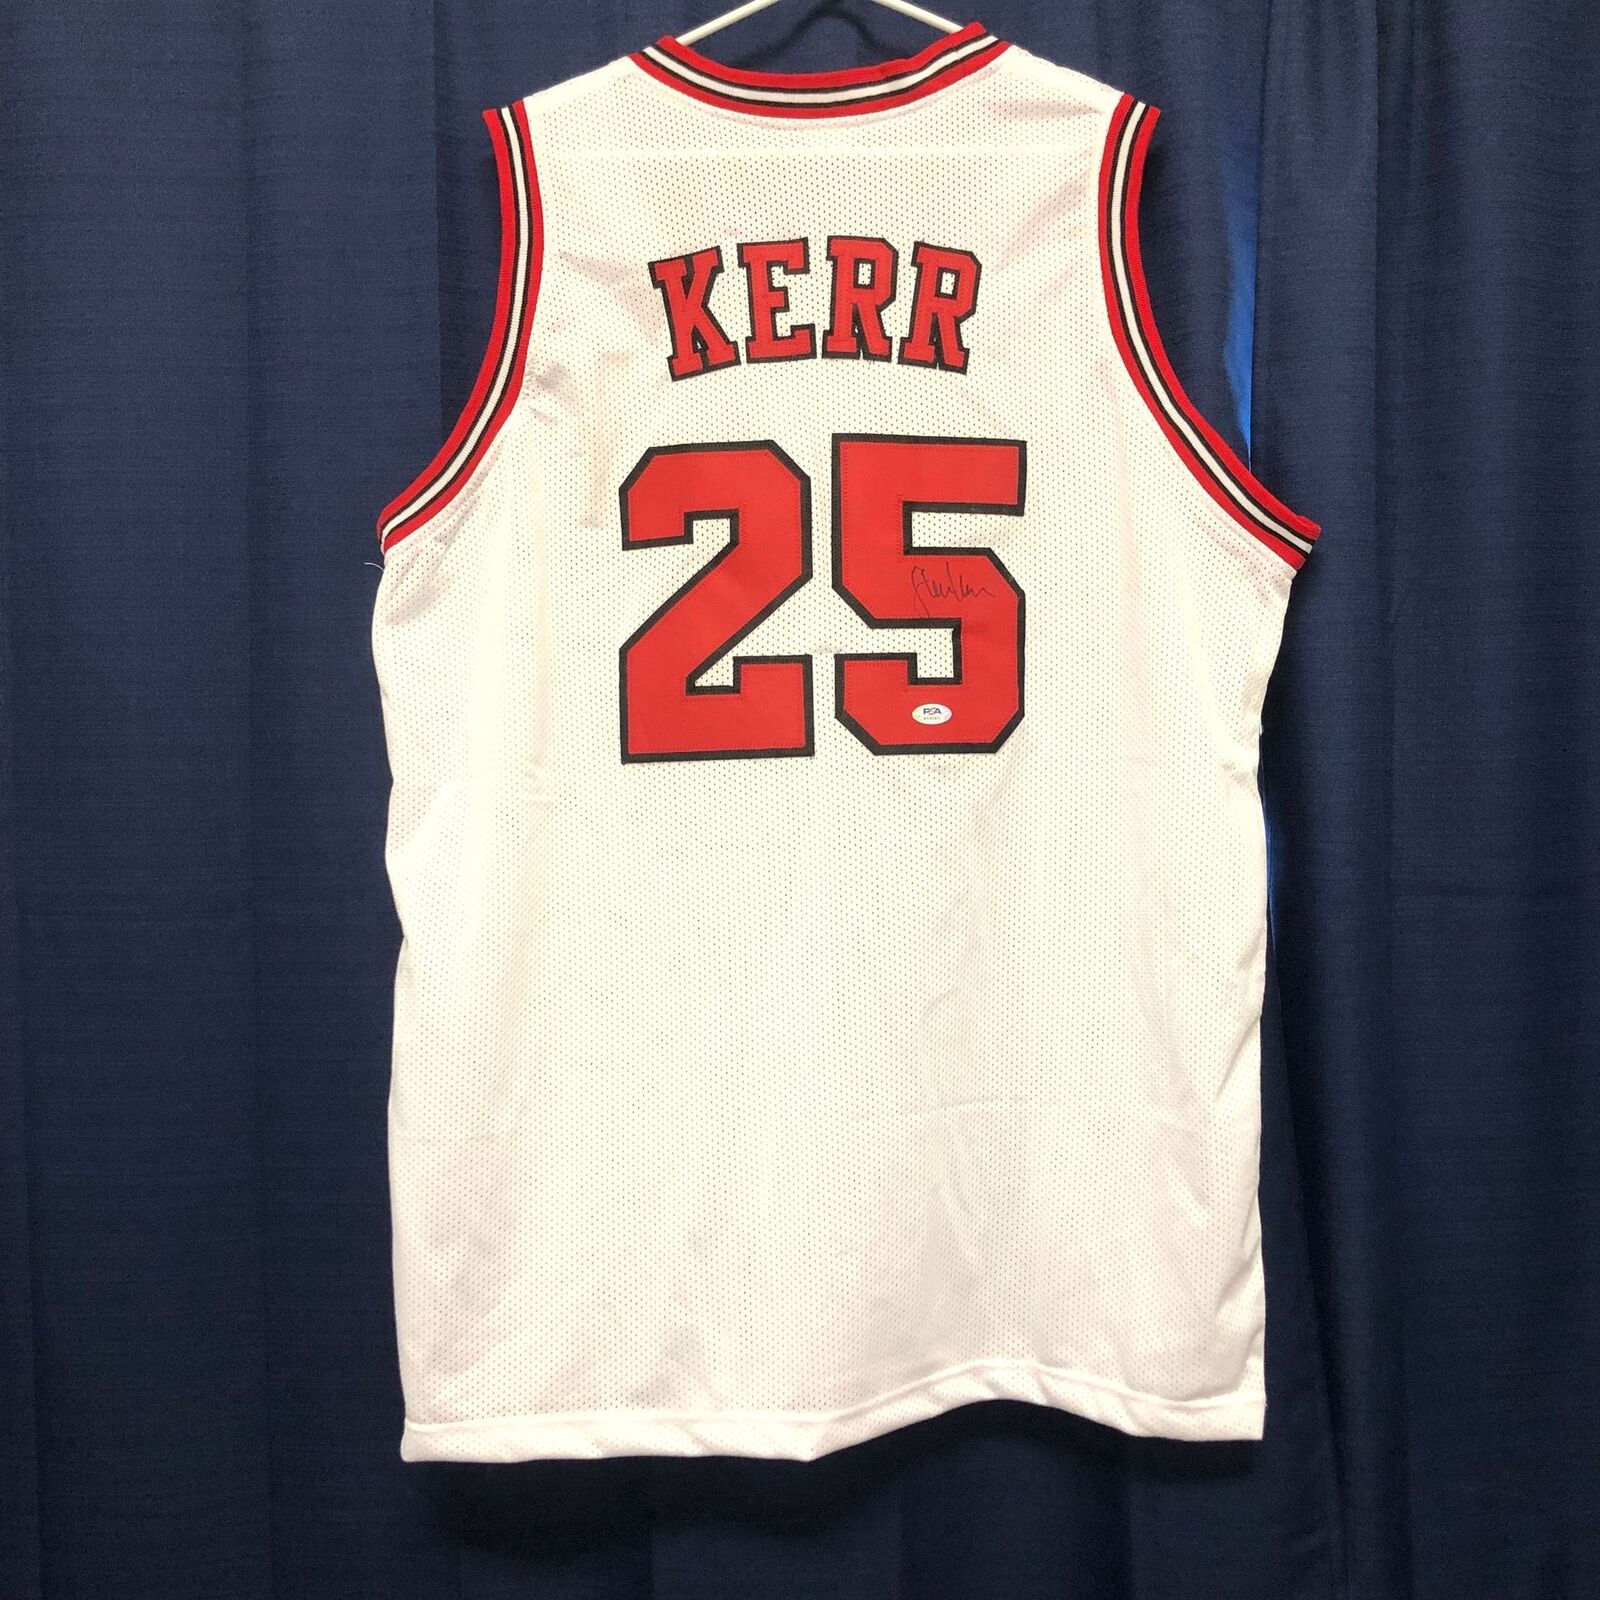 Buy Steve Kerr Signed Jersey Psa/dna Chicago Bulls Michael Jordan